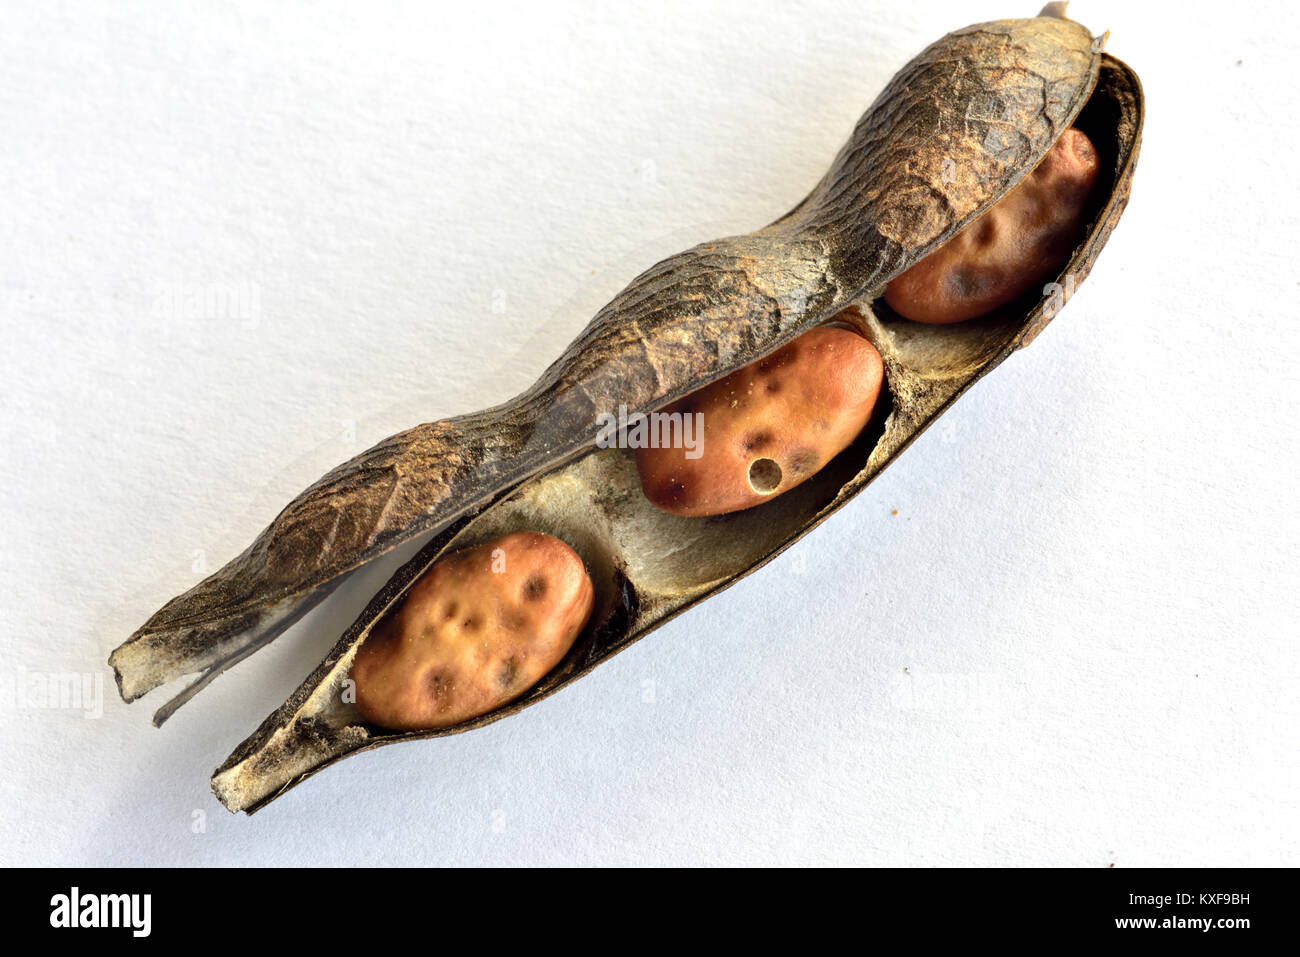 Les fèves séchées ou fèves en pod, un aliment de base dans certains pays, montrant le trou produit par la graine de haricot beetle Banque D'Images